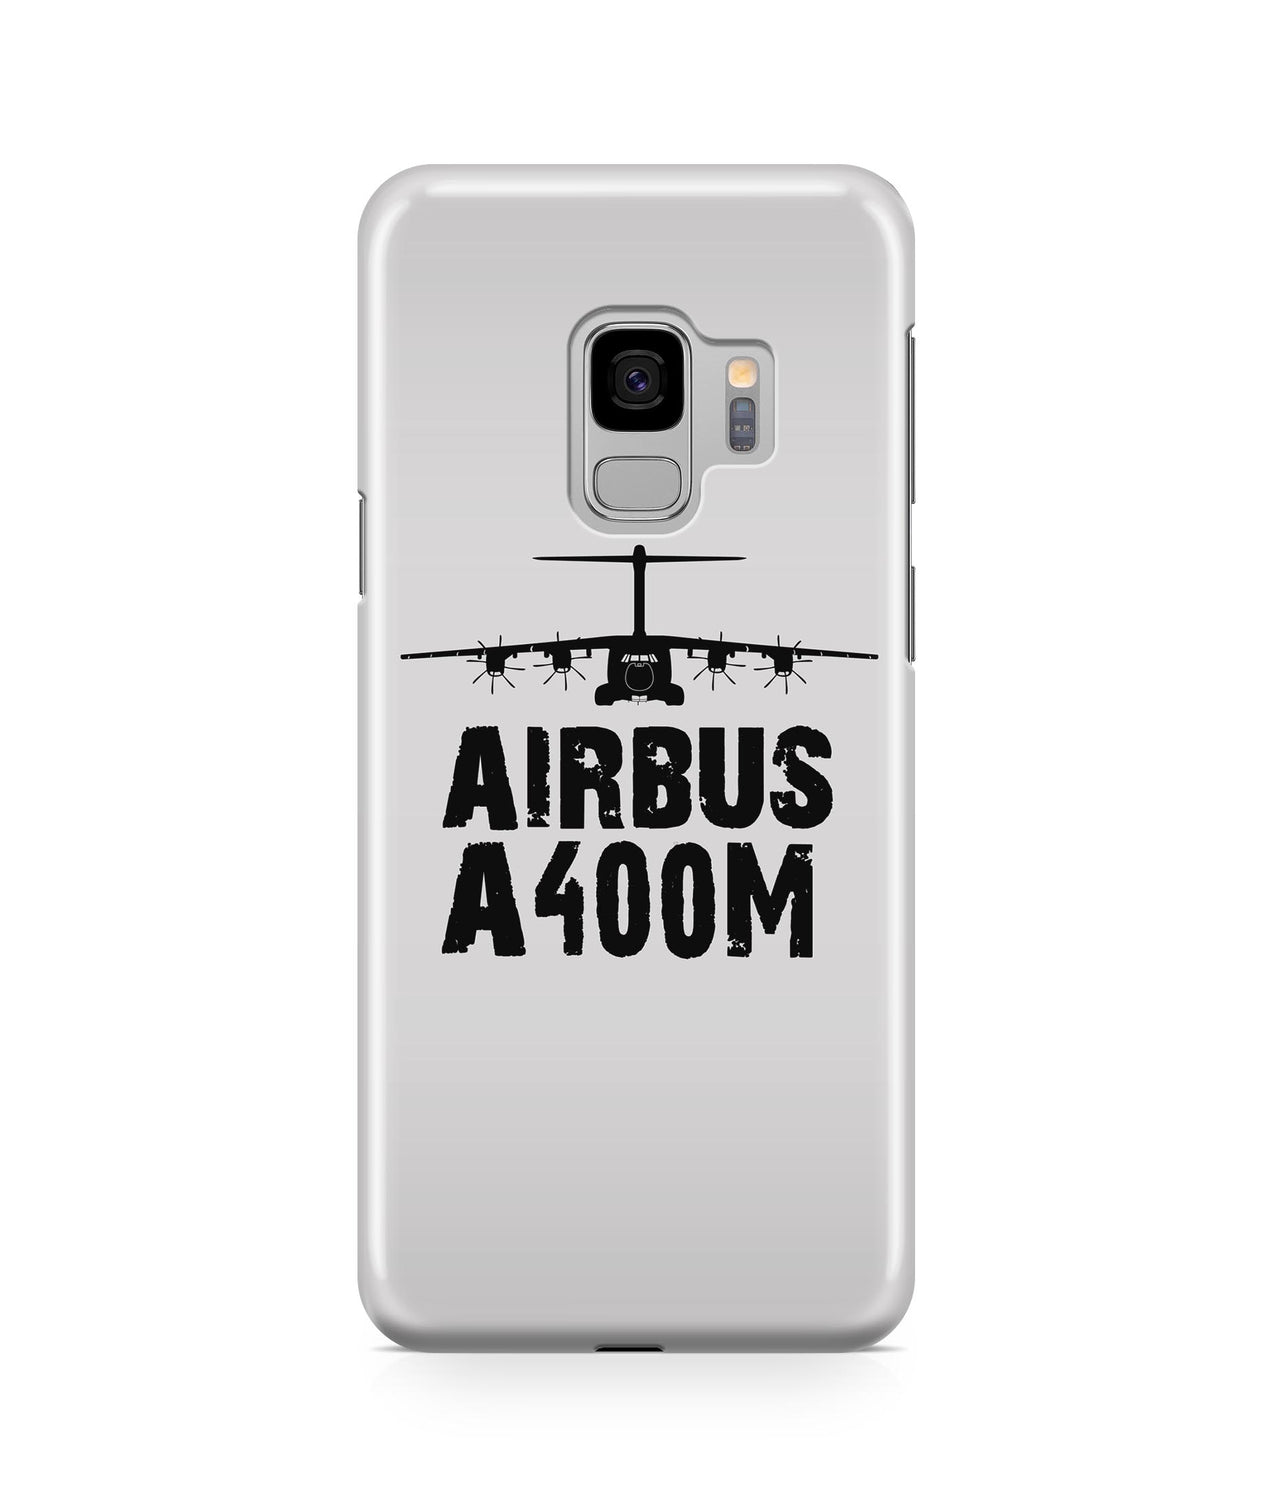 Airbus A400M Plane & Designed Samsung J Cases